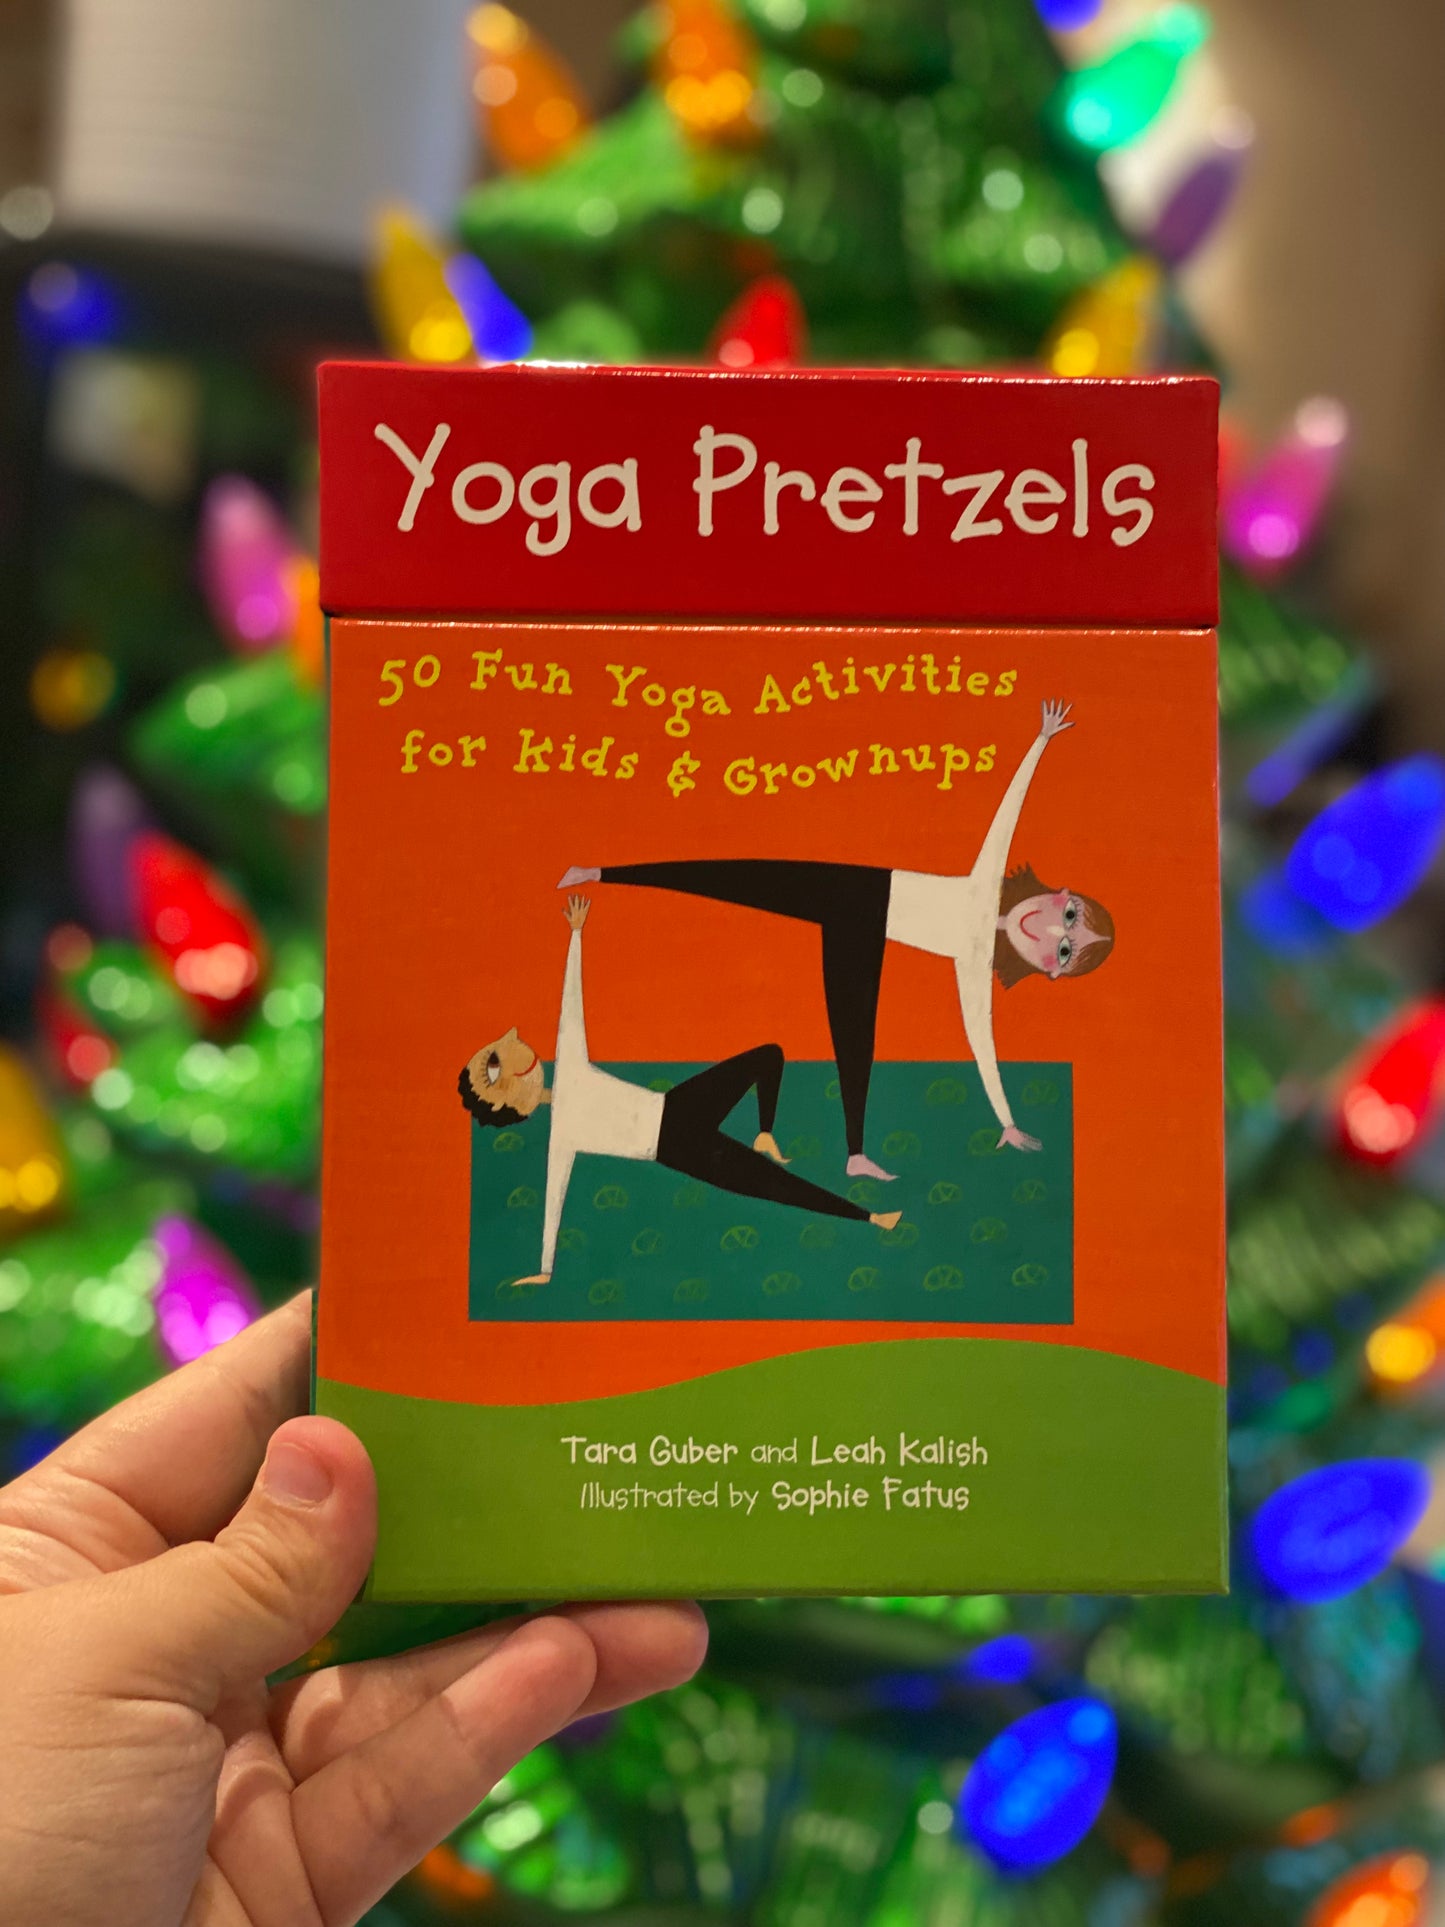 Yoga Pretzels yoga deck